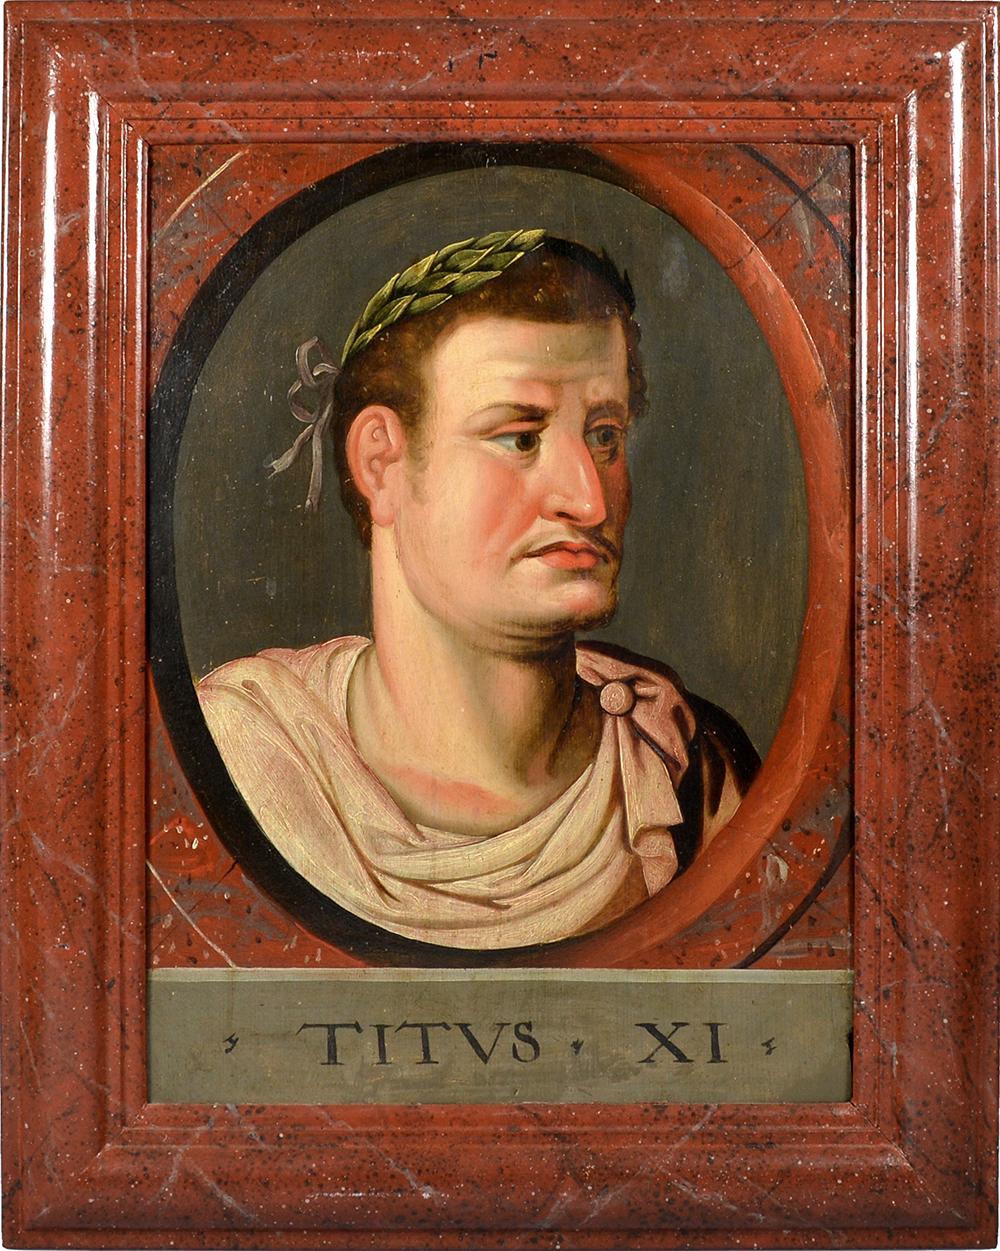 École italienne, d'après Peters Paul Rubens
 
Deux portraits de la gamme des 